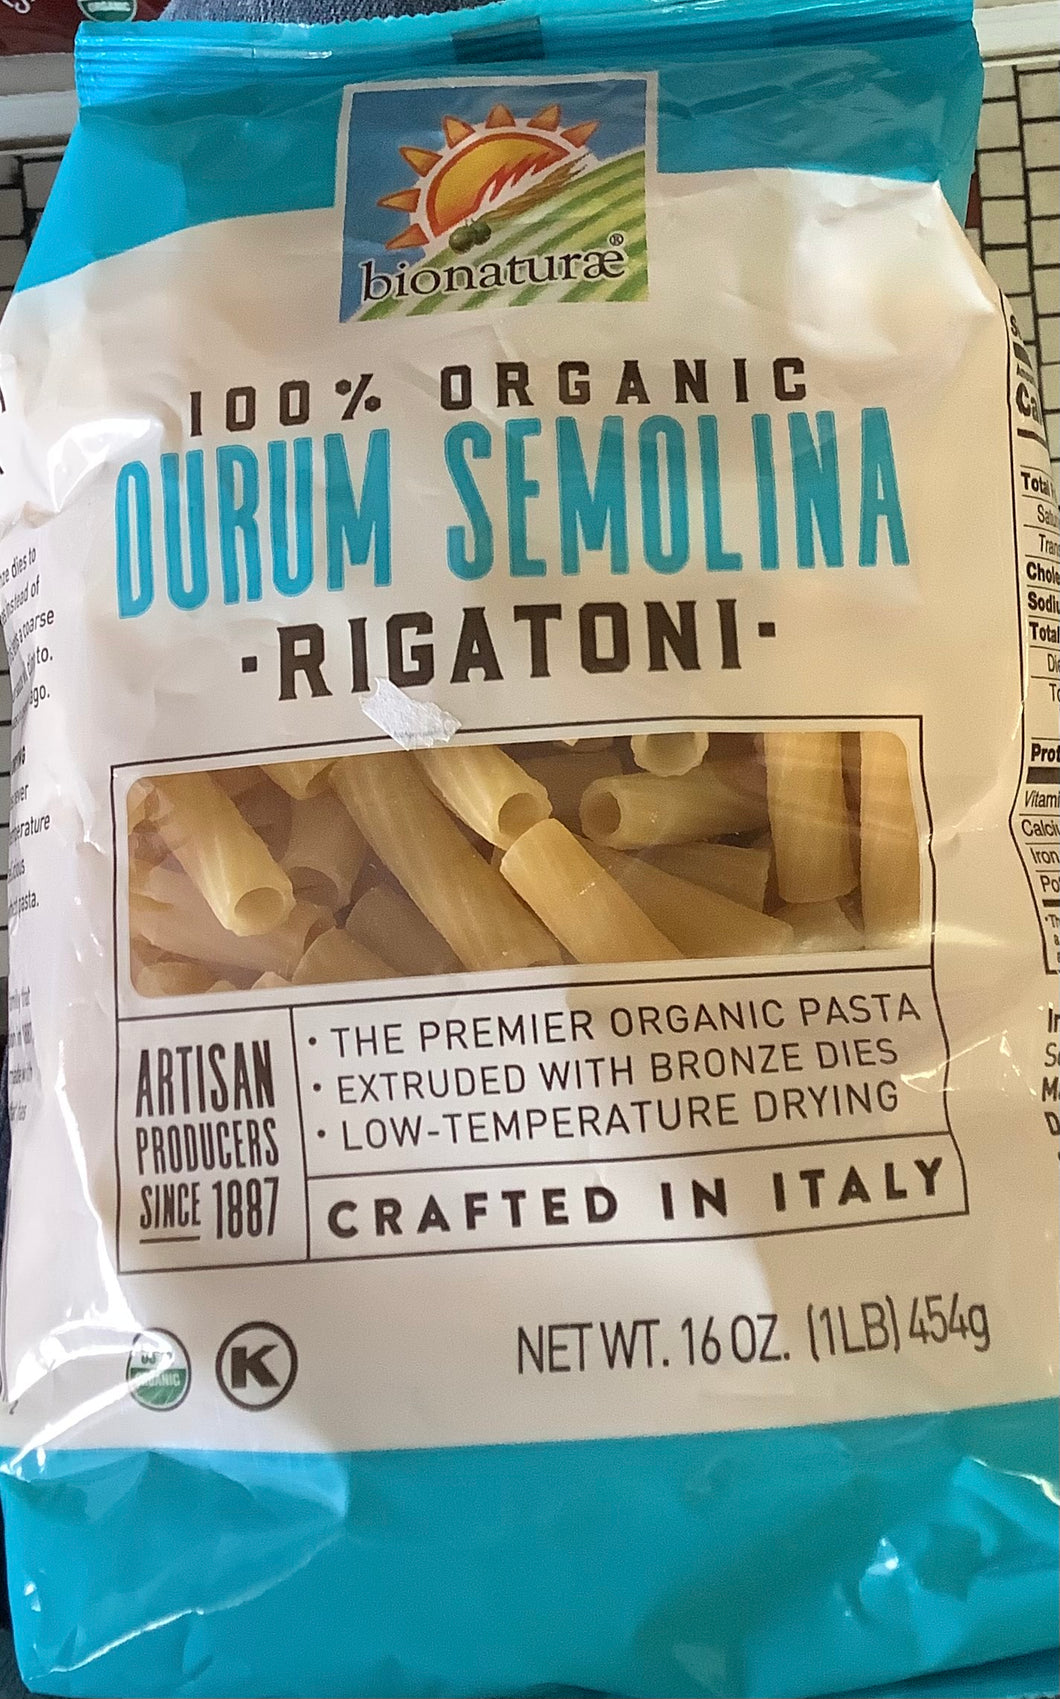 Pasta, Rigatoni, Organic 100% Durum Semolina, Bionaturae